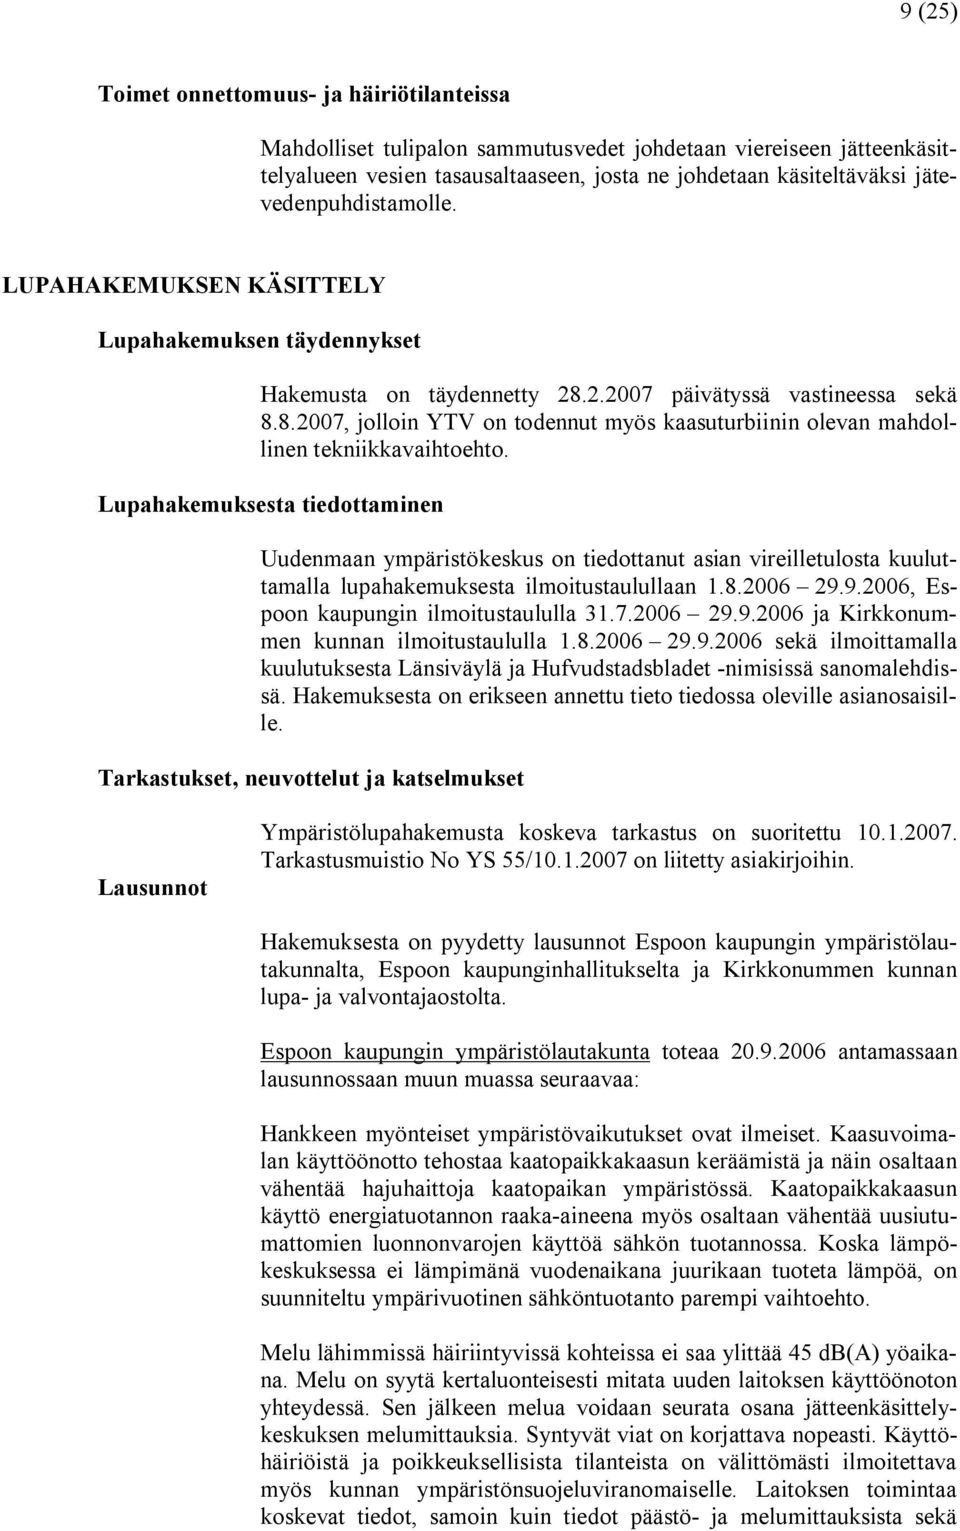 Lupahakemuksesta tiedottaminen Uudenmaan ympäristökeskus on tiedottanut asian vireilletulosta kuuluttamalla lupahakemuksesta ilmoitustaulullaan 1.8.2006 29.9.2006, Espoon kaupungin ilmoitustaululla 31.